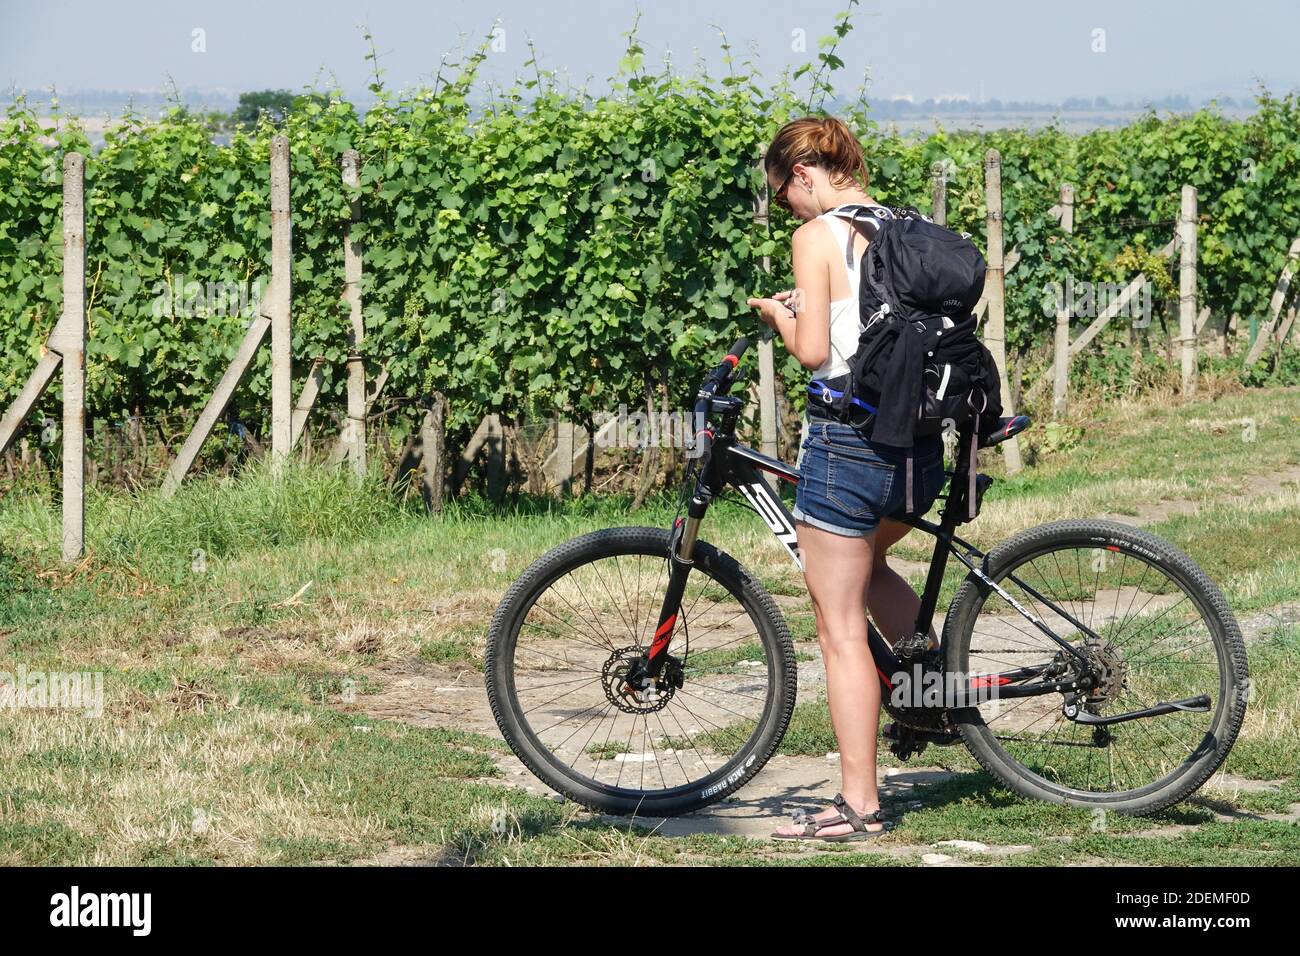 Frau auf dem Fahrrad in Weinberg Mähren Tschechische Republik Sommerreise Stockfoto